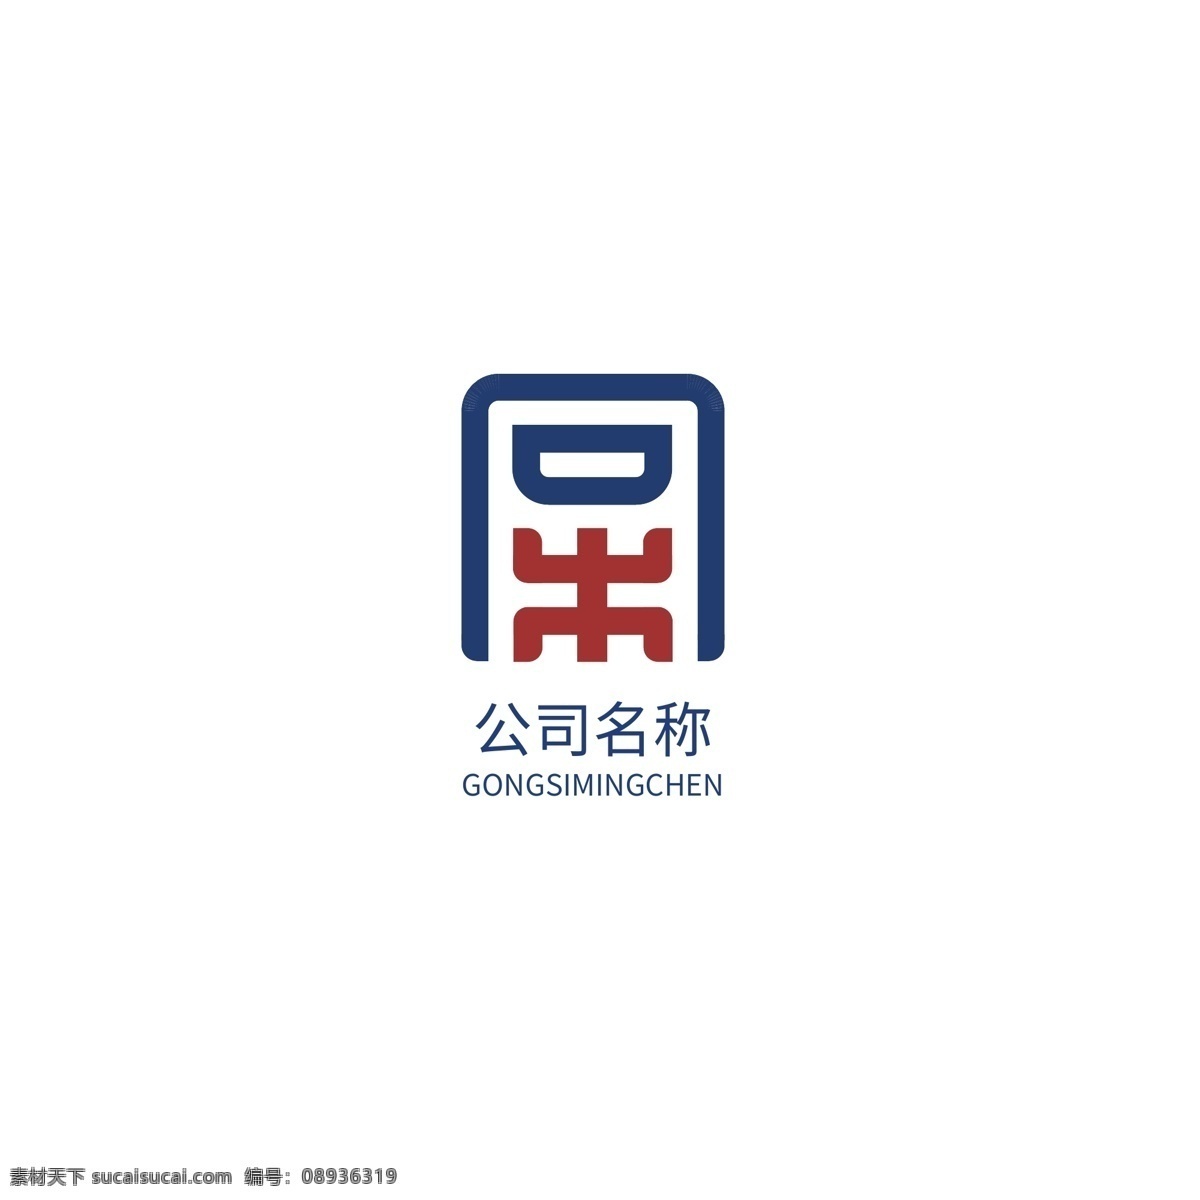 it 互联网 logo 科技logo 网络 网络科技